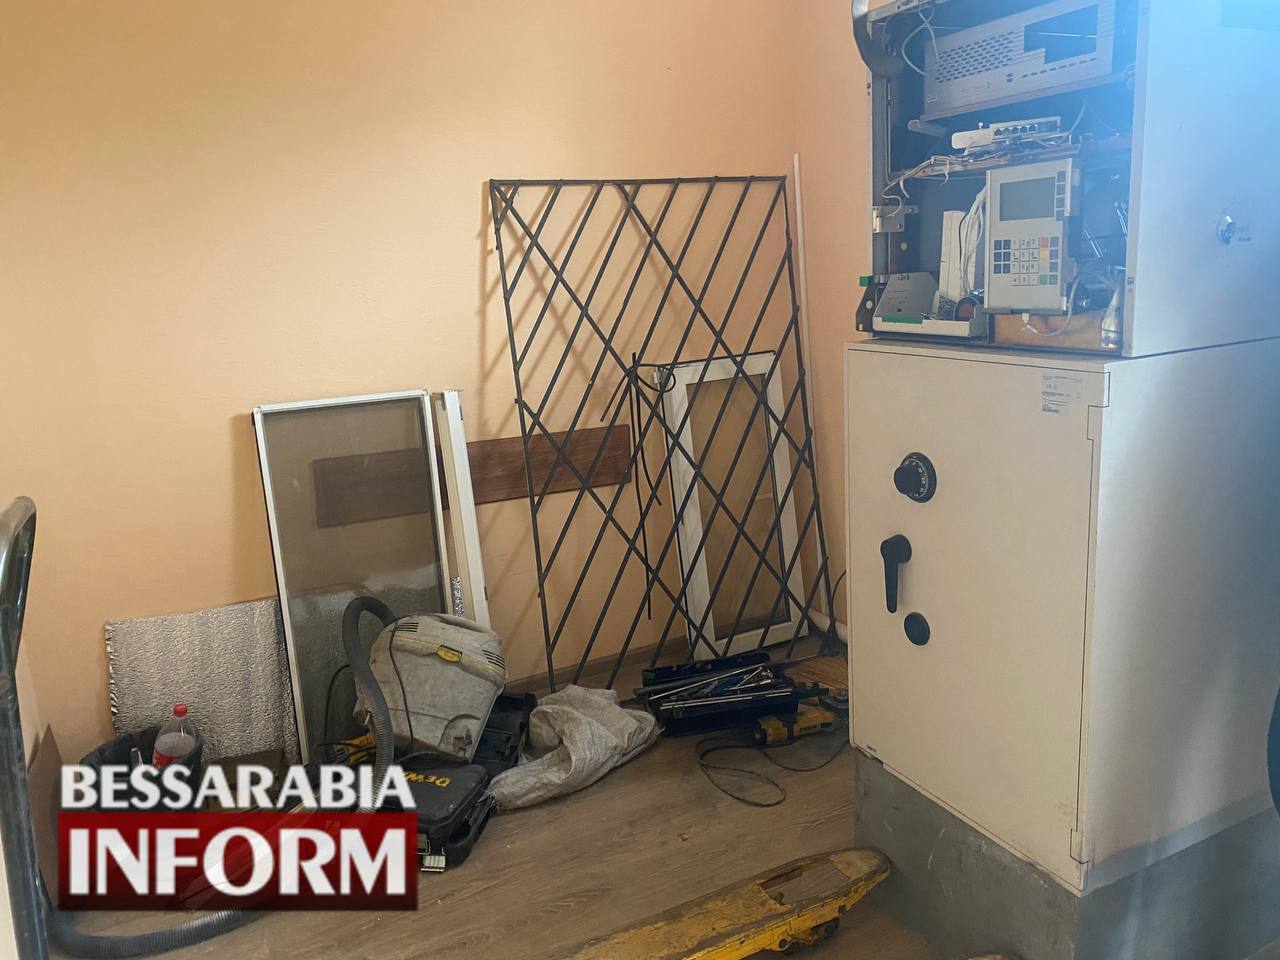 Глава Бородинского общества пошел на хитрость, чтобы установить банкомат в поселке